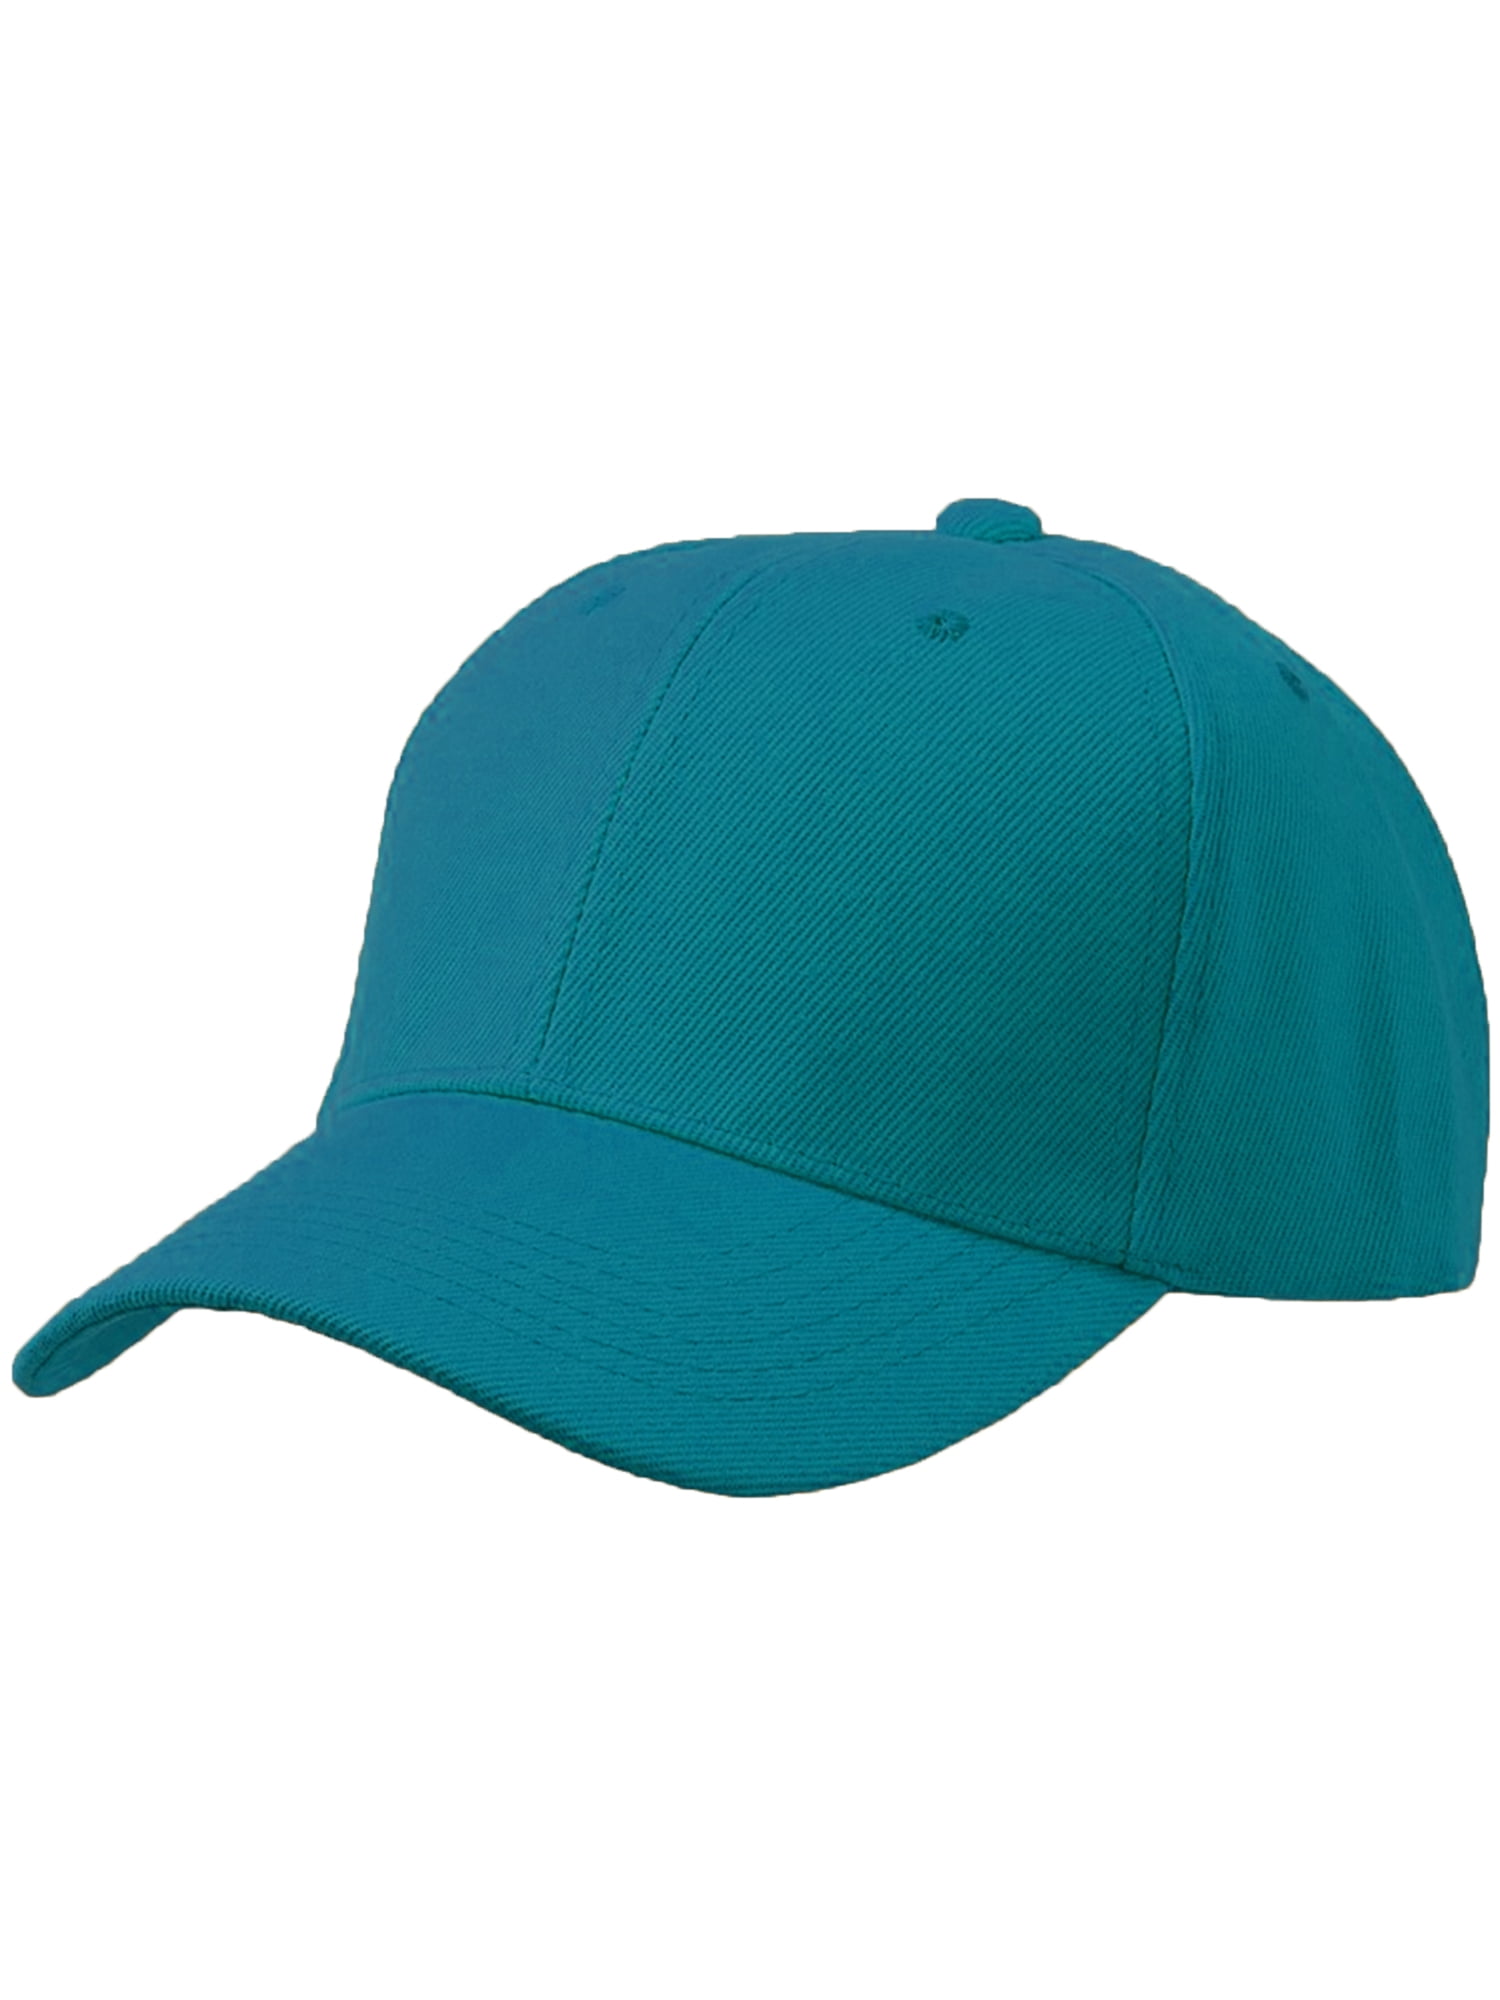 Men's Plain Baseball Cap Adjustable Curved Visor Hat - Aqua - Walmart.com